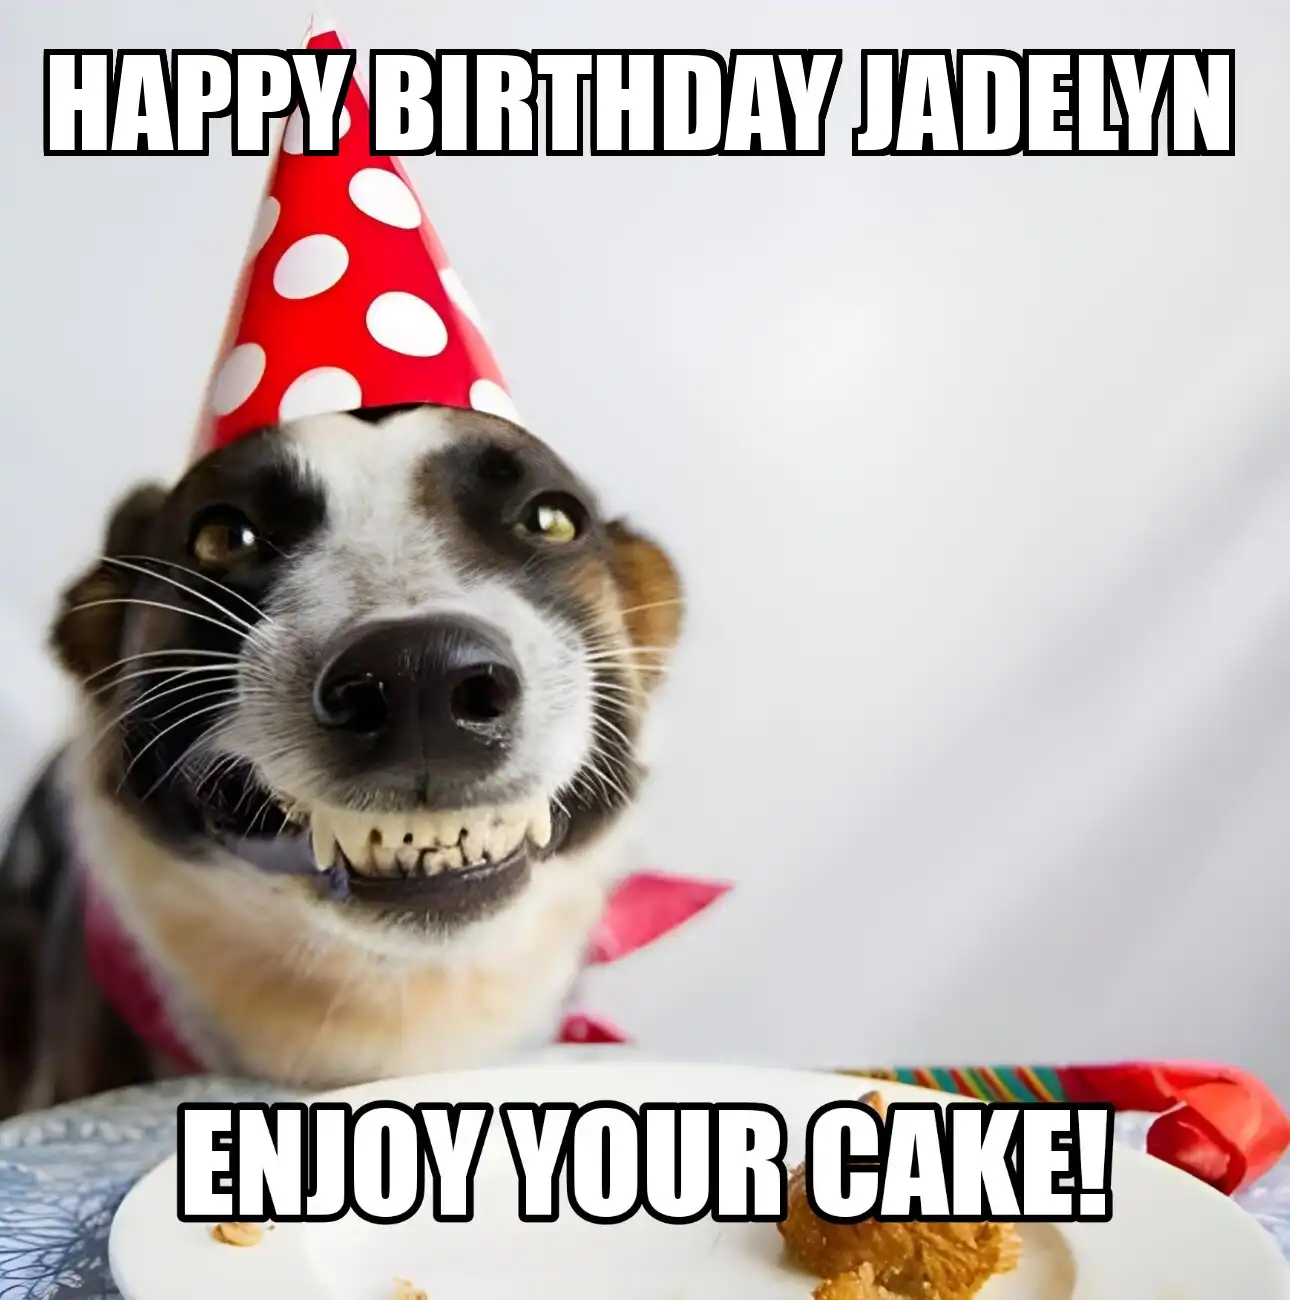 Happy Birthday Jadelyn Enjoy Your Cake Dog Meme